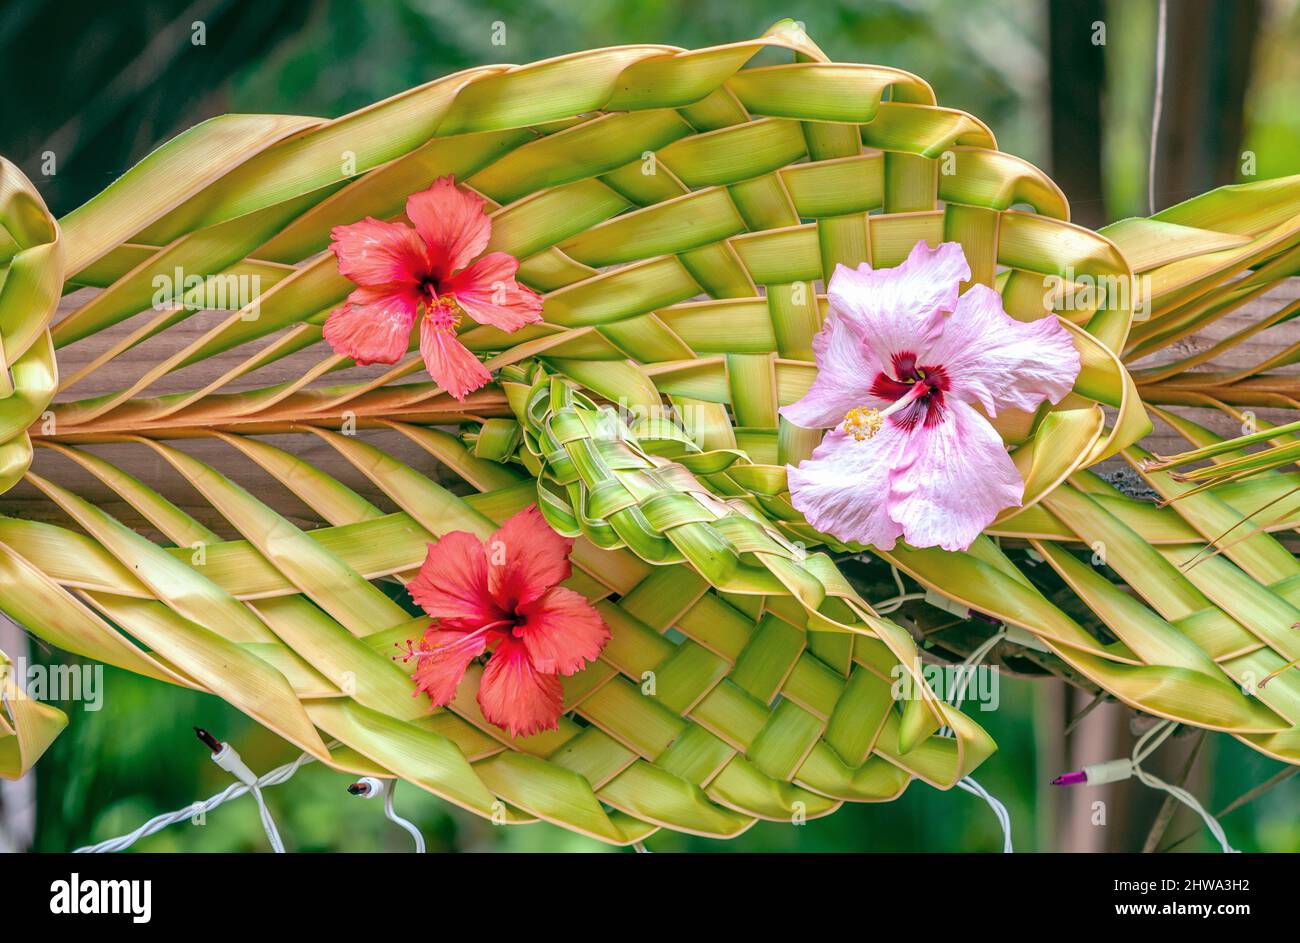 Gros plan d'une décoration de style polynésien composée de feuilles de palmier tressées et de fleurs d'hibiscus à l'île Bora Bora, Polynésie française Banque D'Images